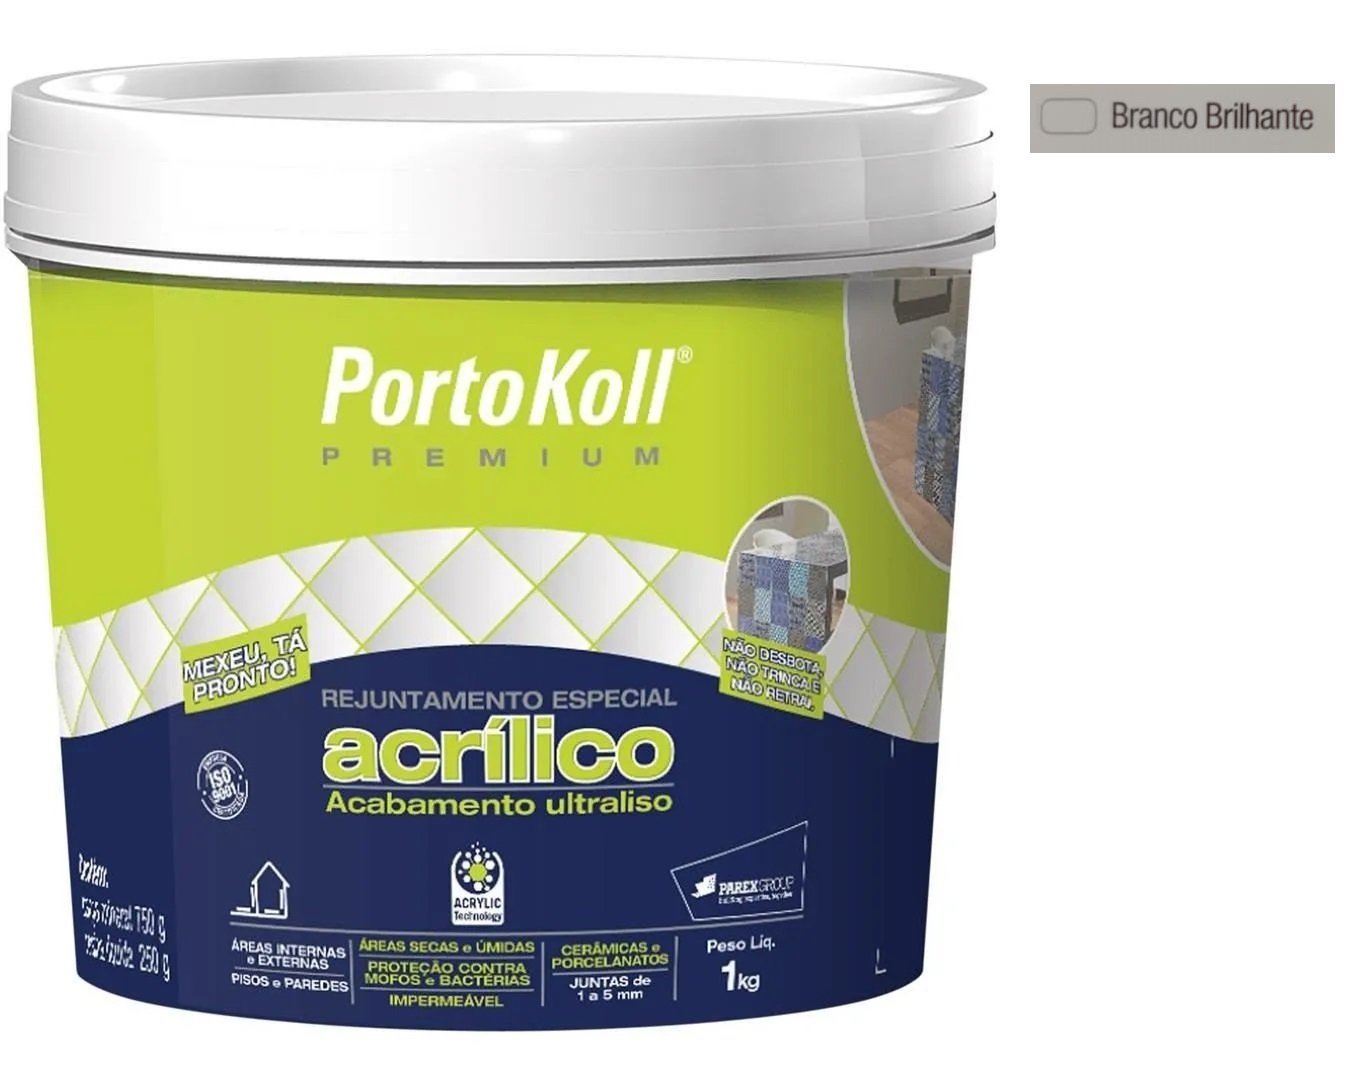 Rejunte Acrílico Portokoll Premium 1kg - BRANCO BRILHANTE - 1